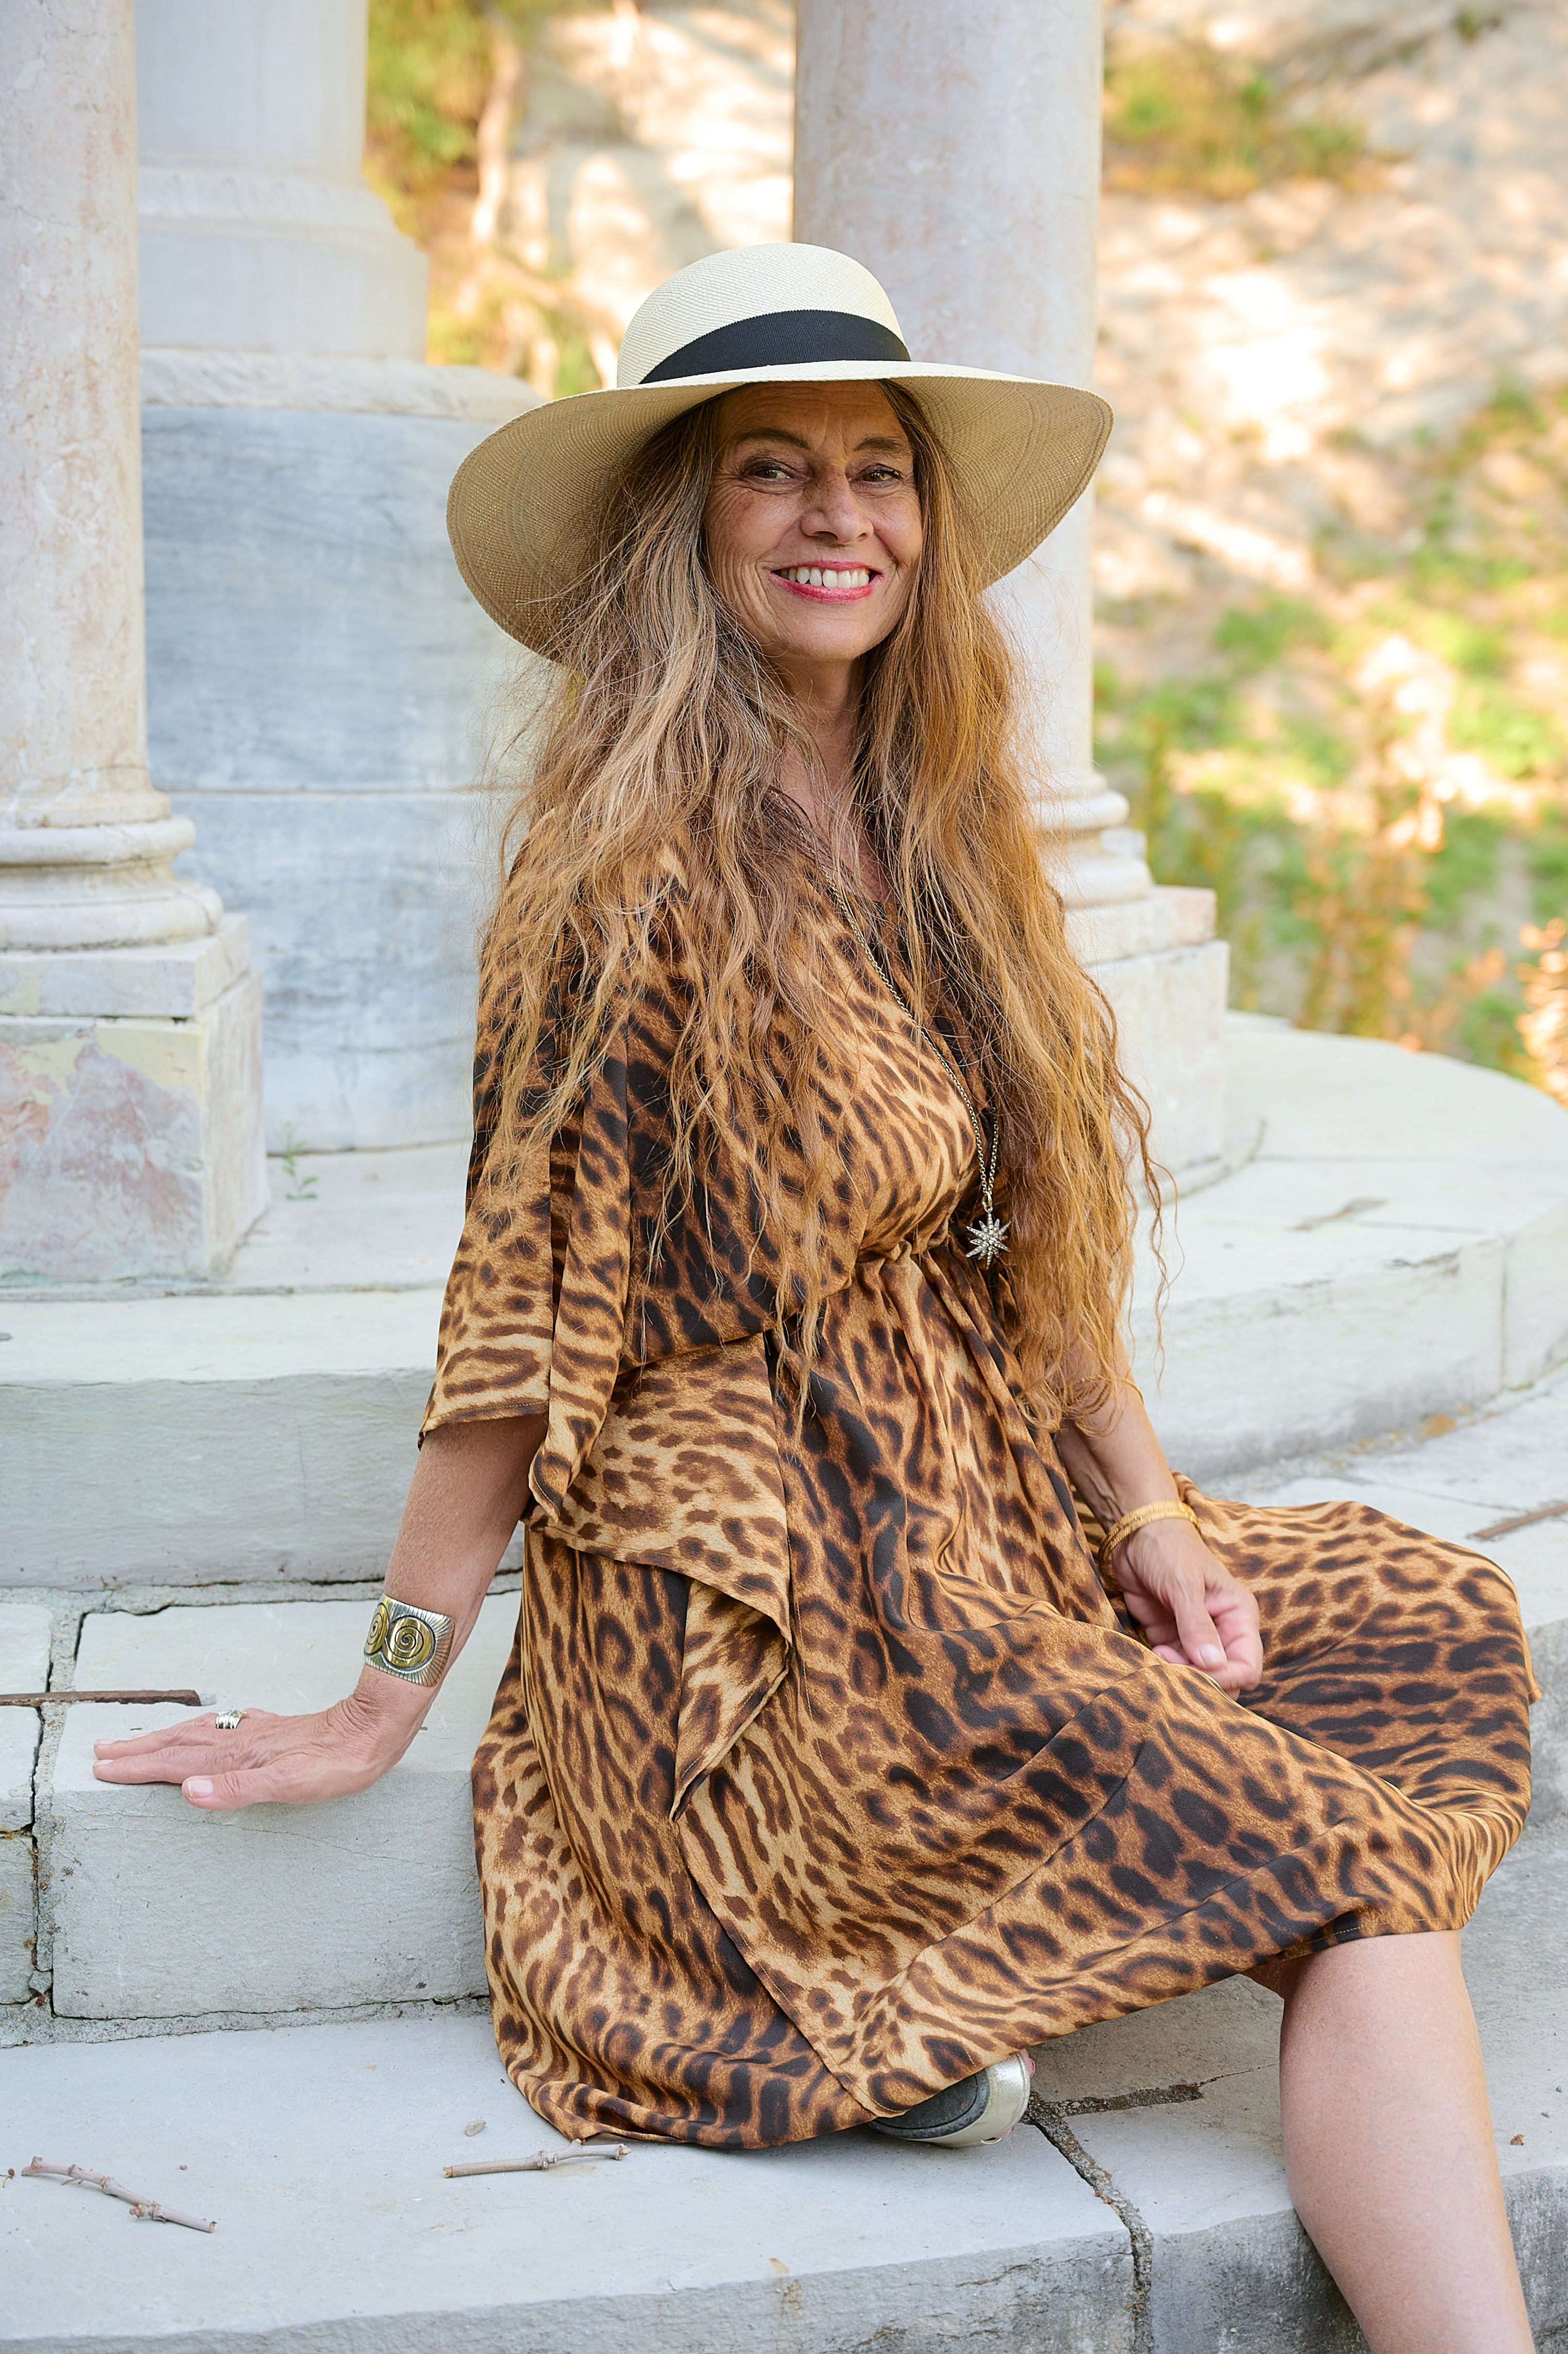 Jeanie Jaguar Italian Silk Midi Kaftan Dress